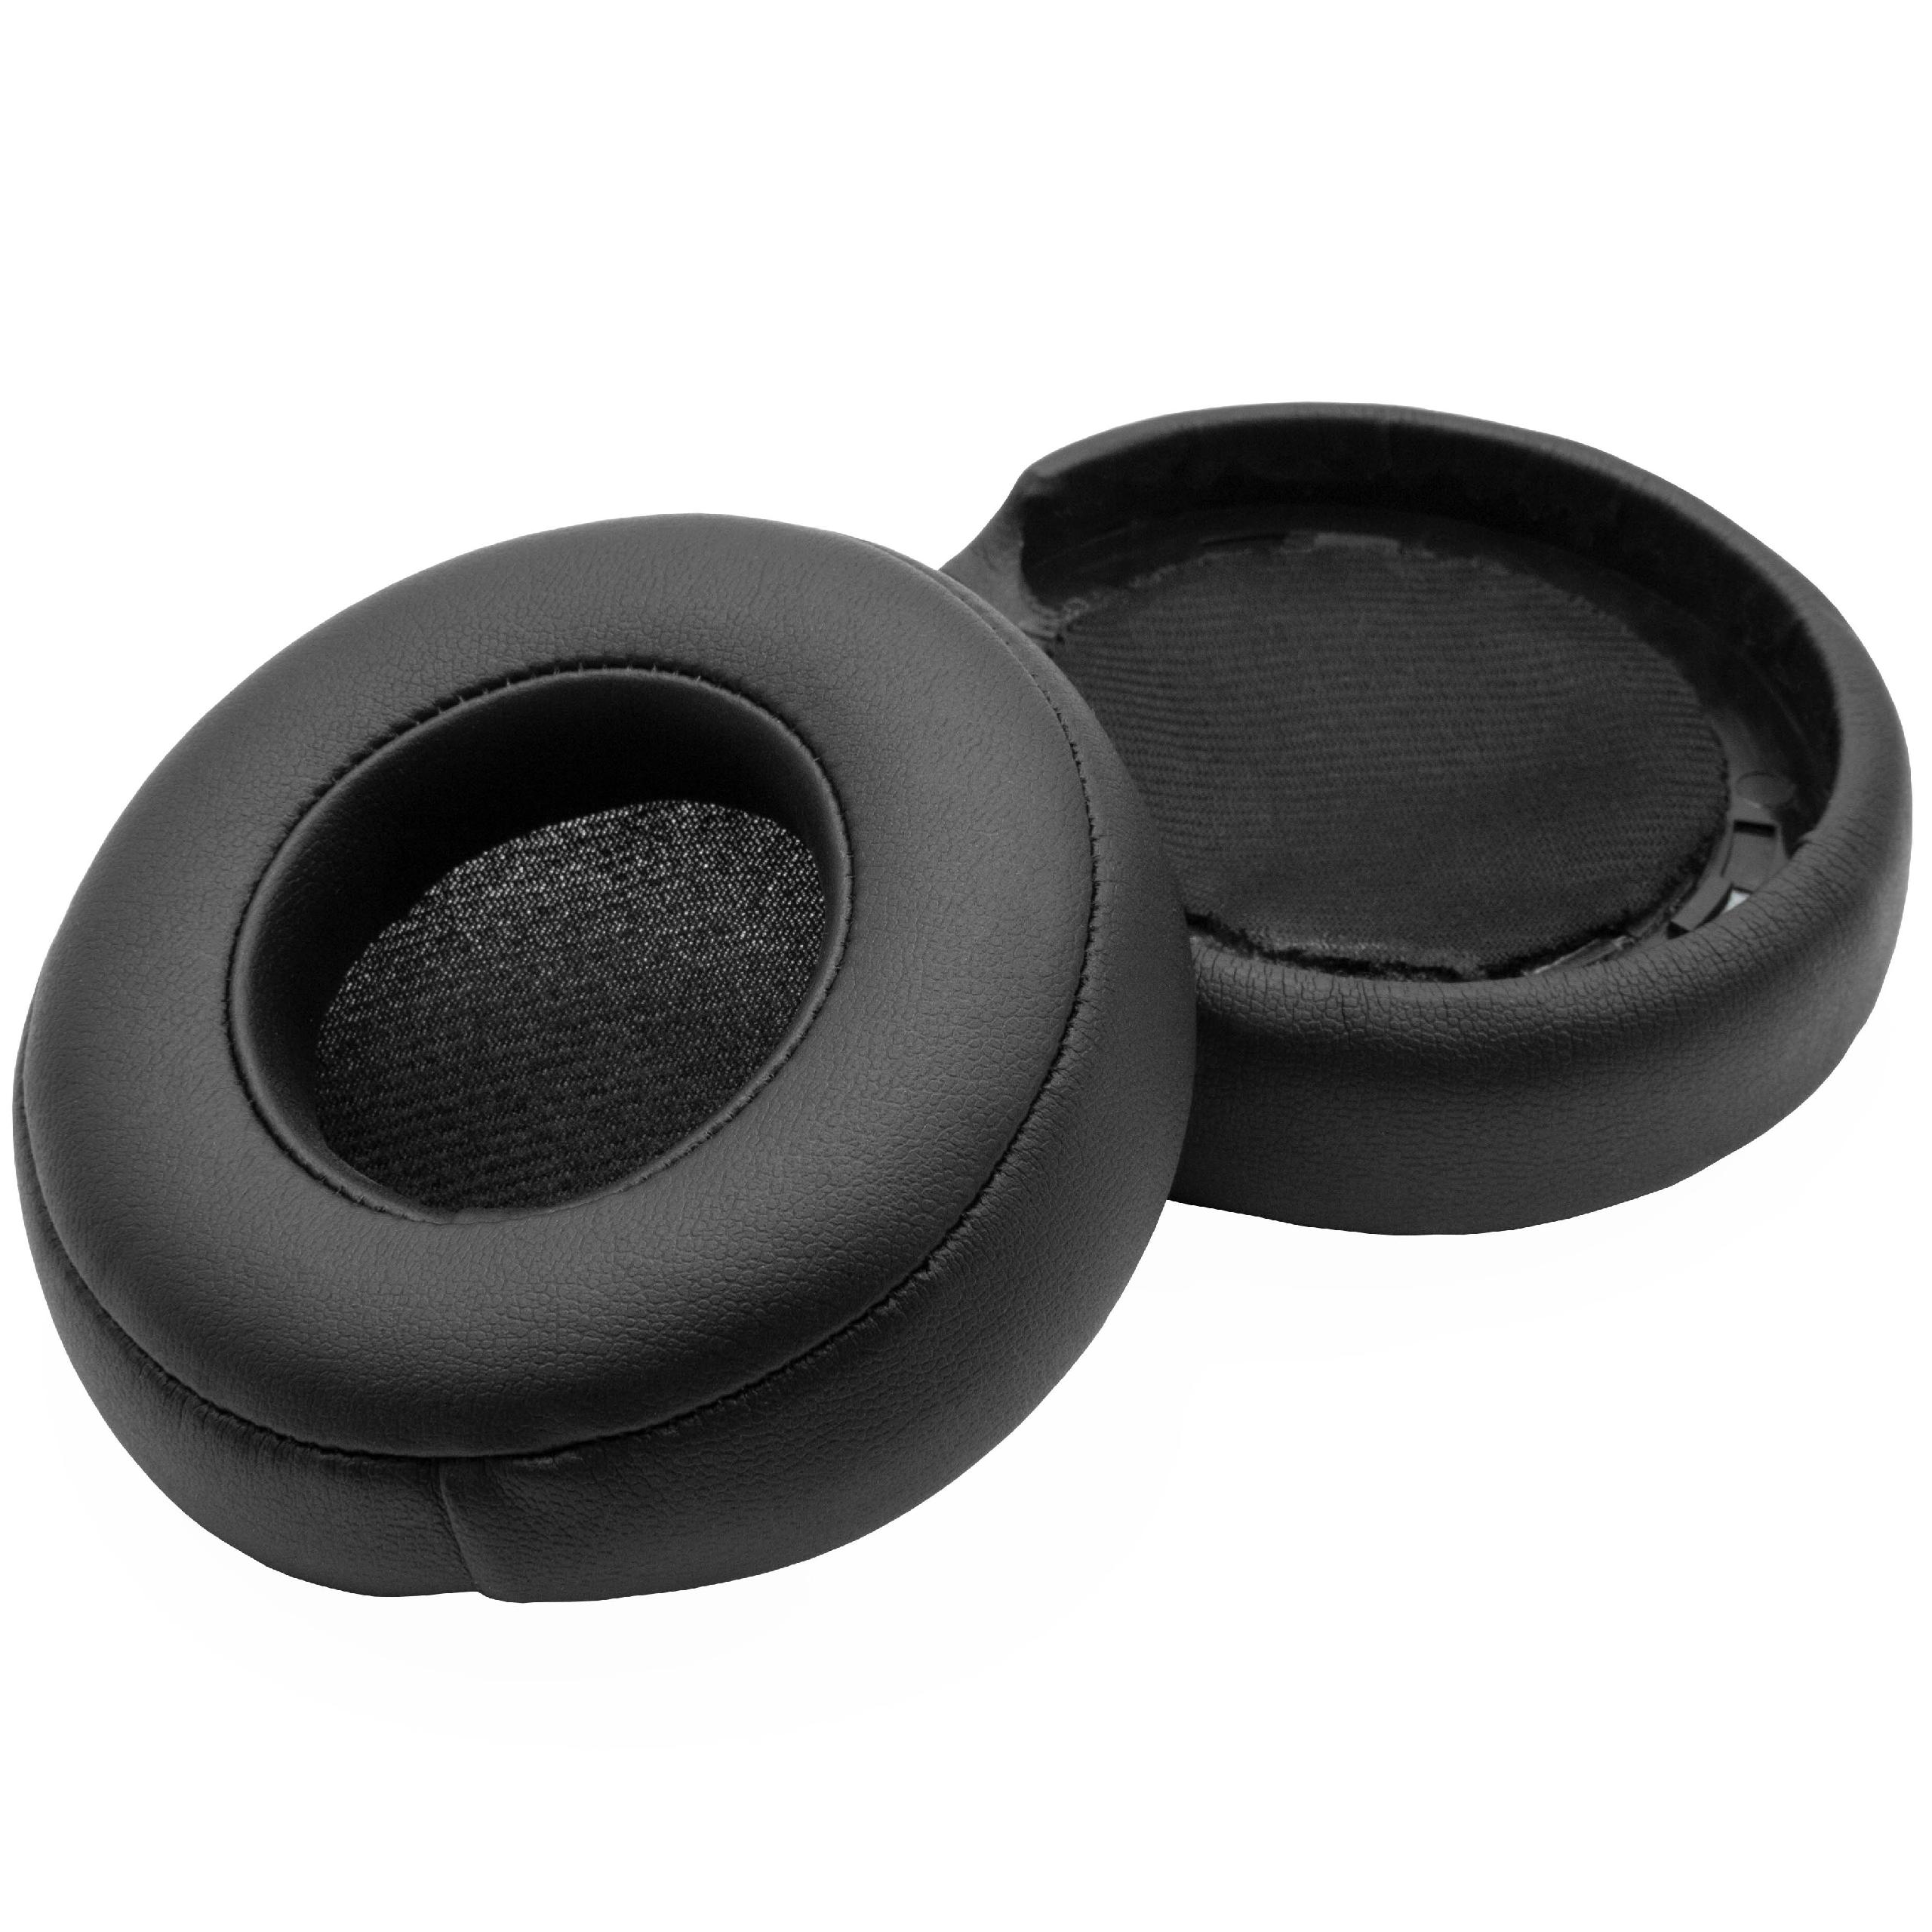 Ear Pads suitable for Beats Monster by Dr. Dre Headphones etc. - polyurethane / foam, 8.5 cm External Diameter